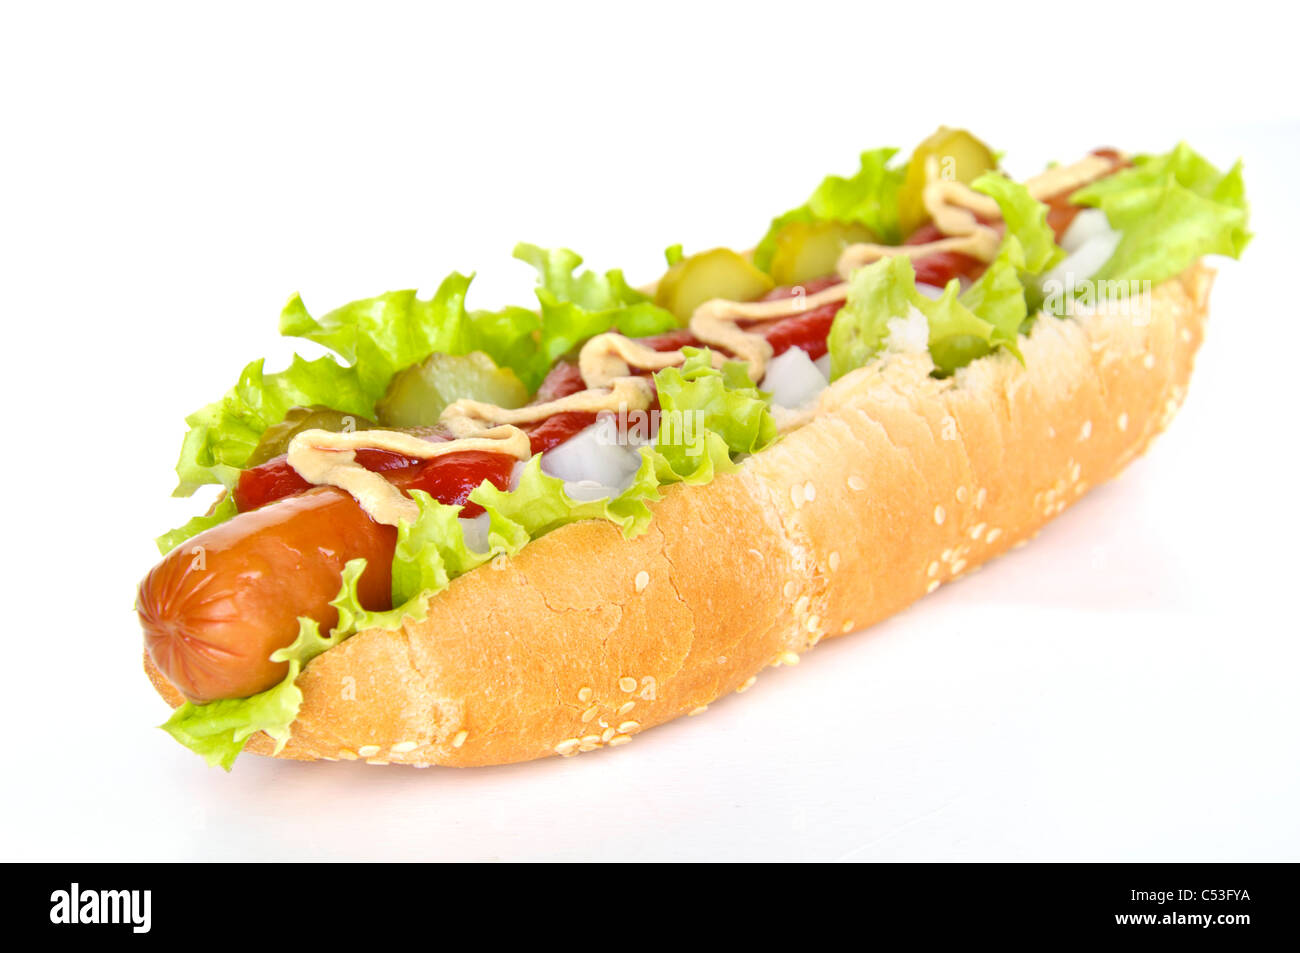 Hot dog on the white background Stock Photo